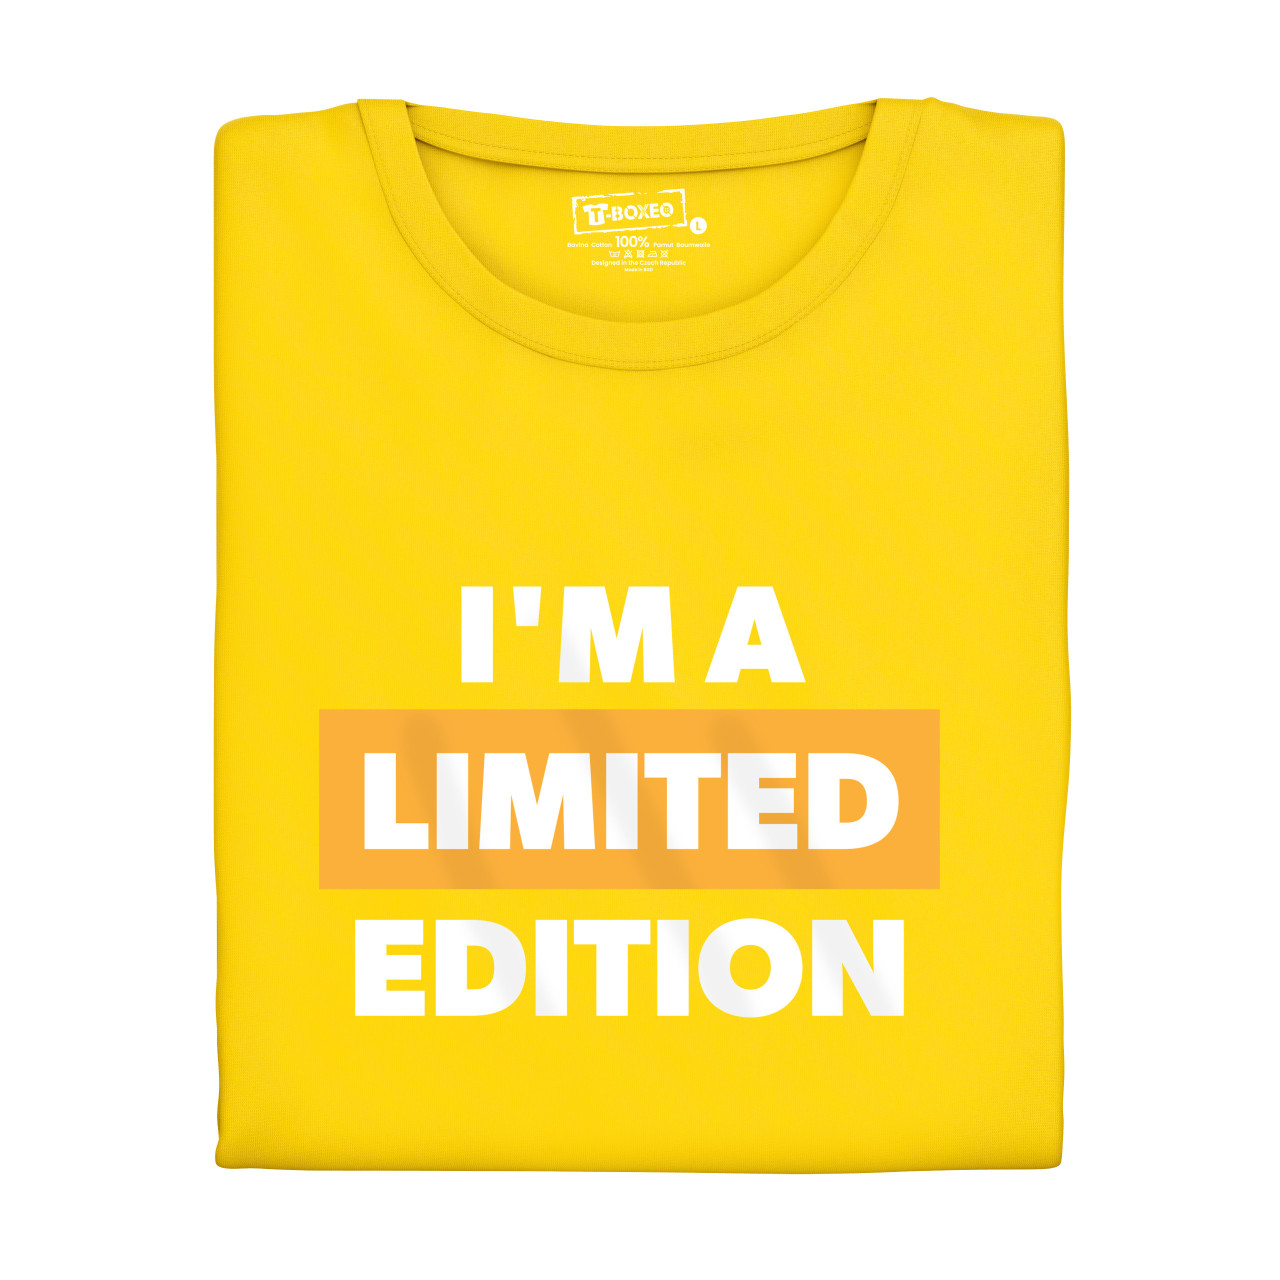 Dámské tričko s potiskem “Jsem limitovaná edice”